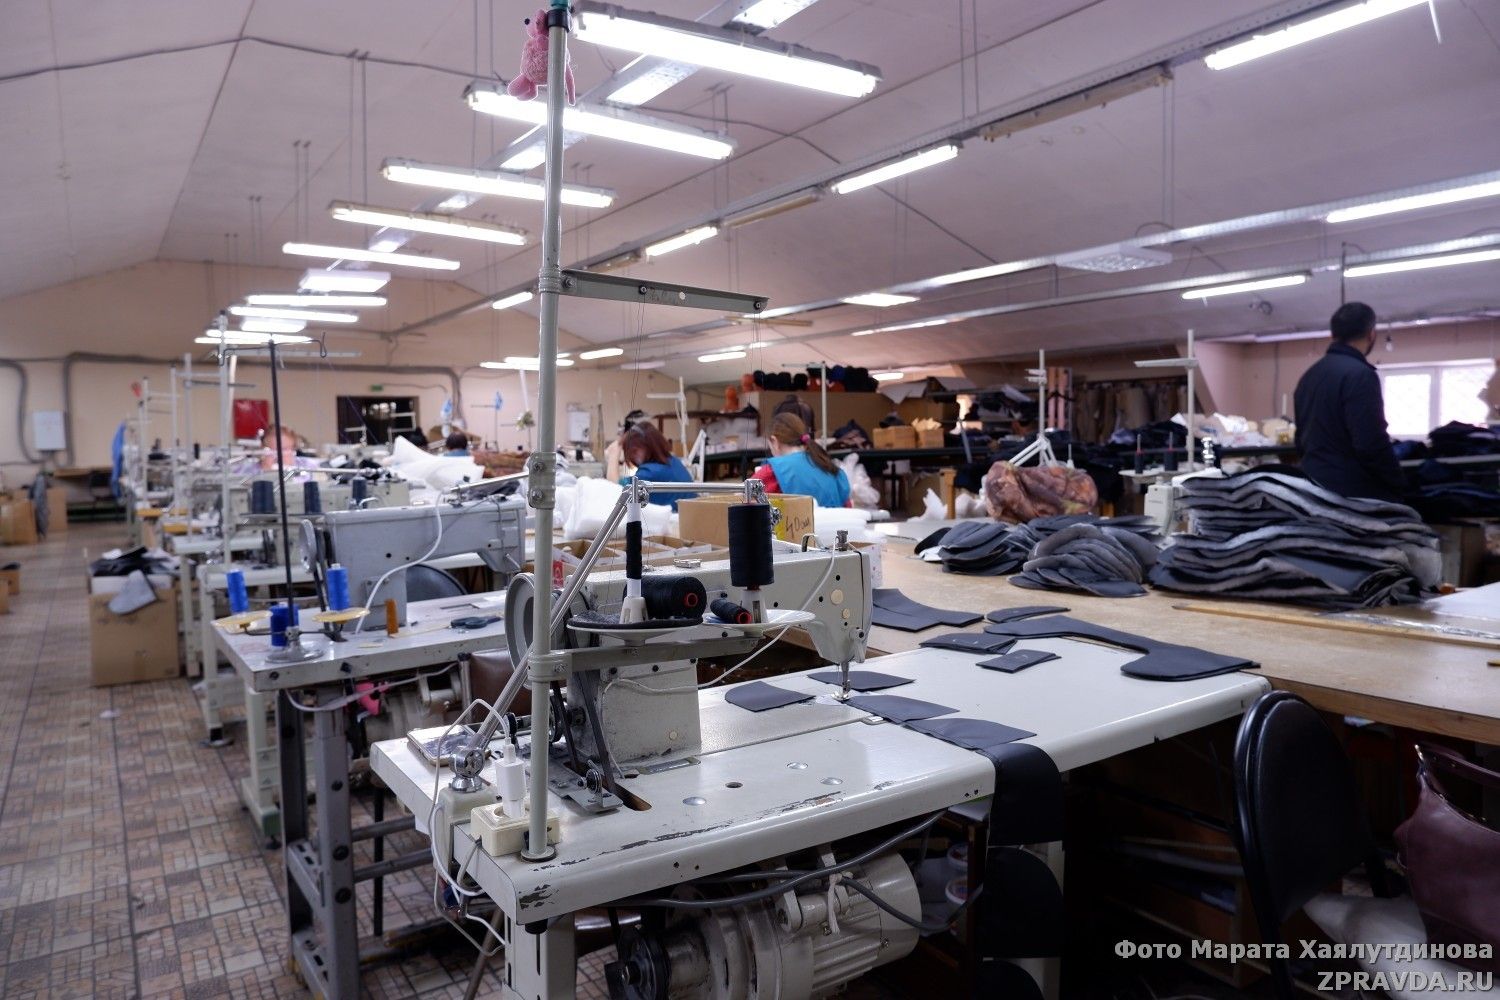 Михаил Афанасьев оценил швейное производство в посёлке Васильево